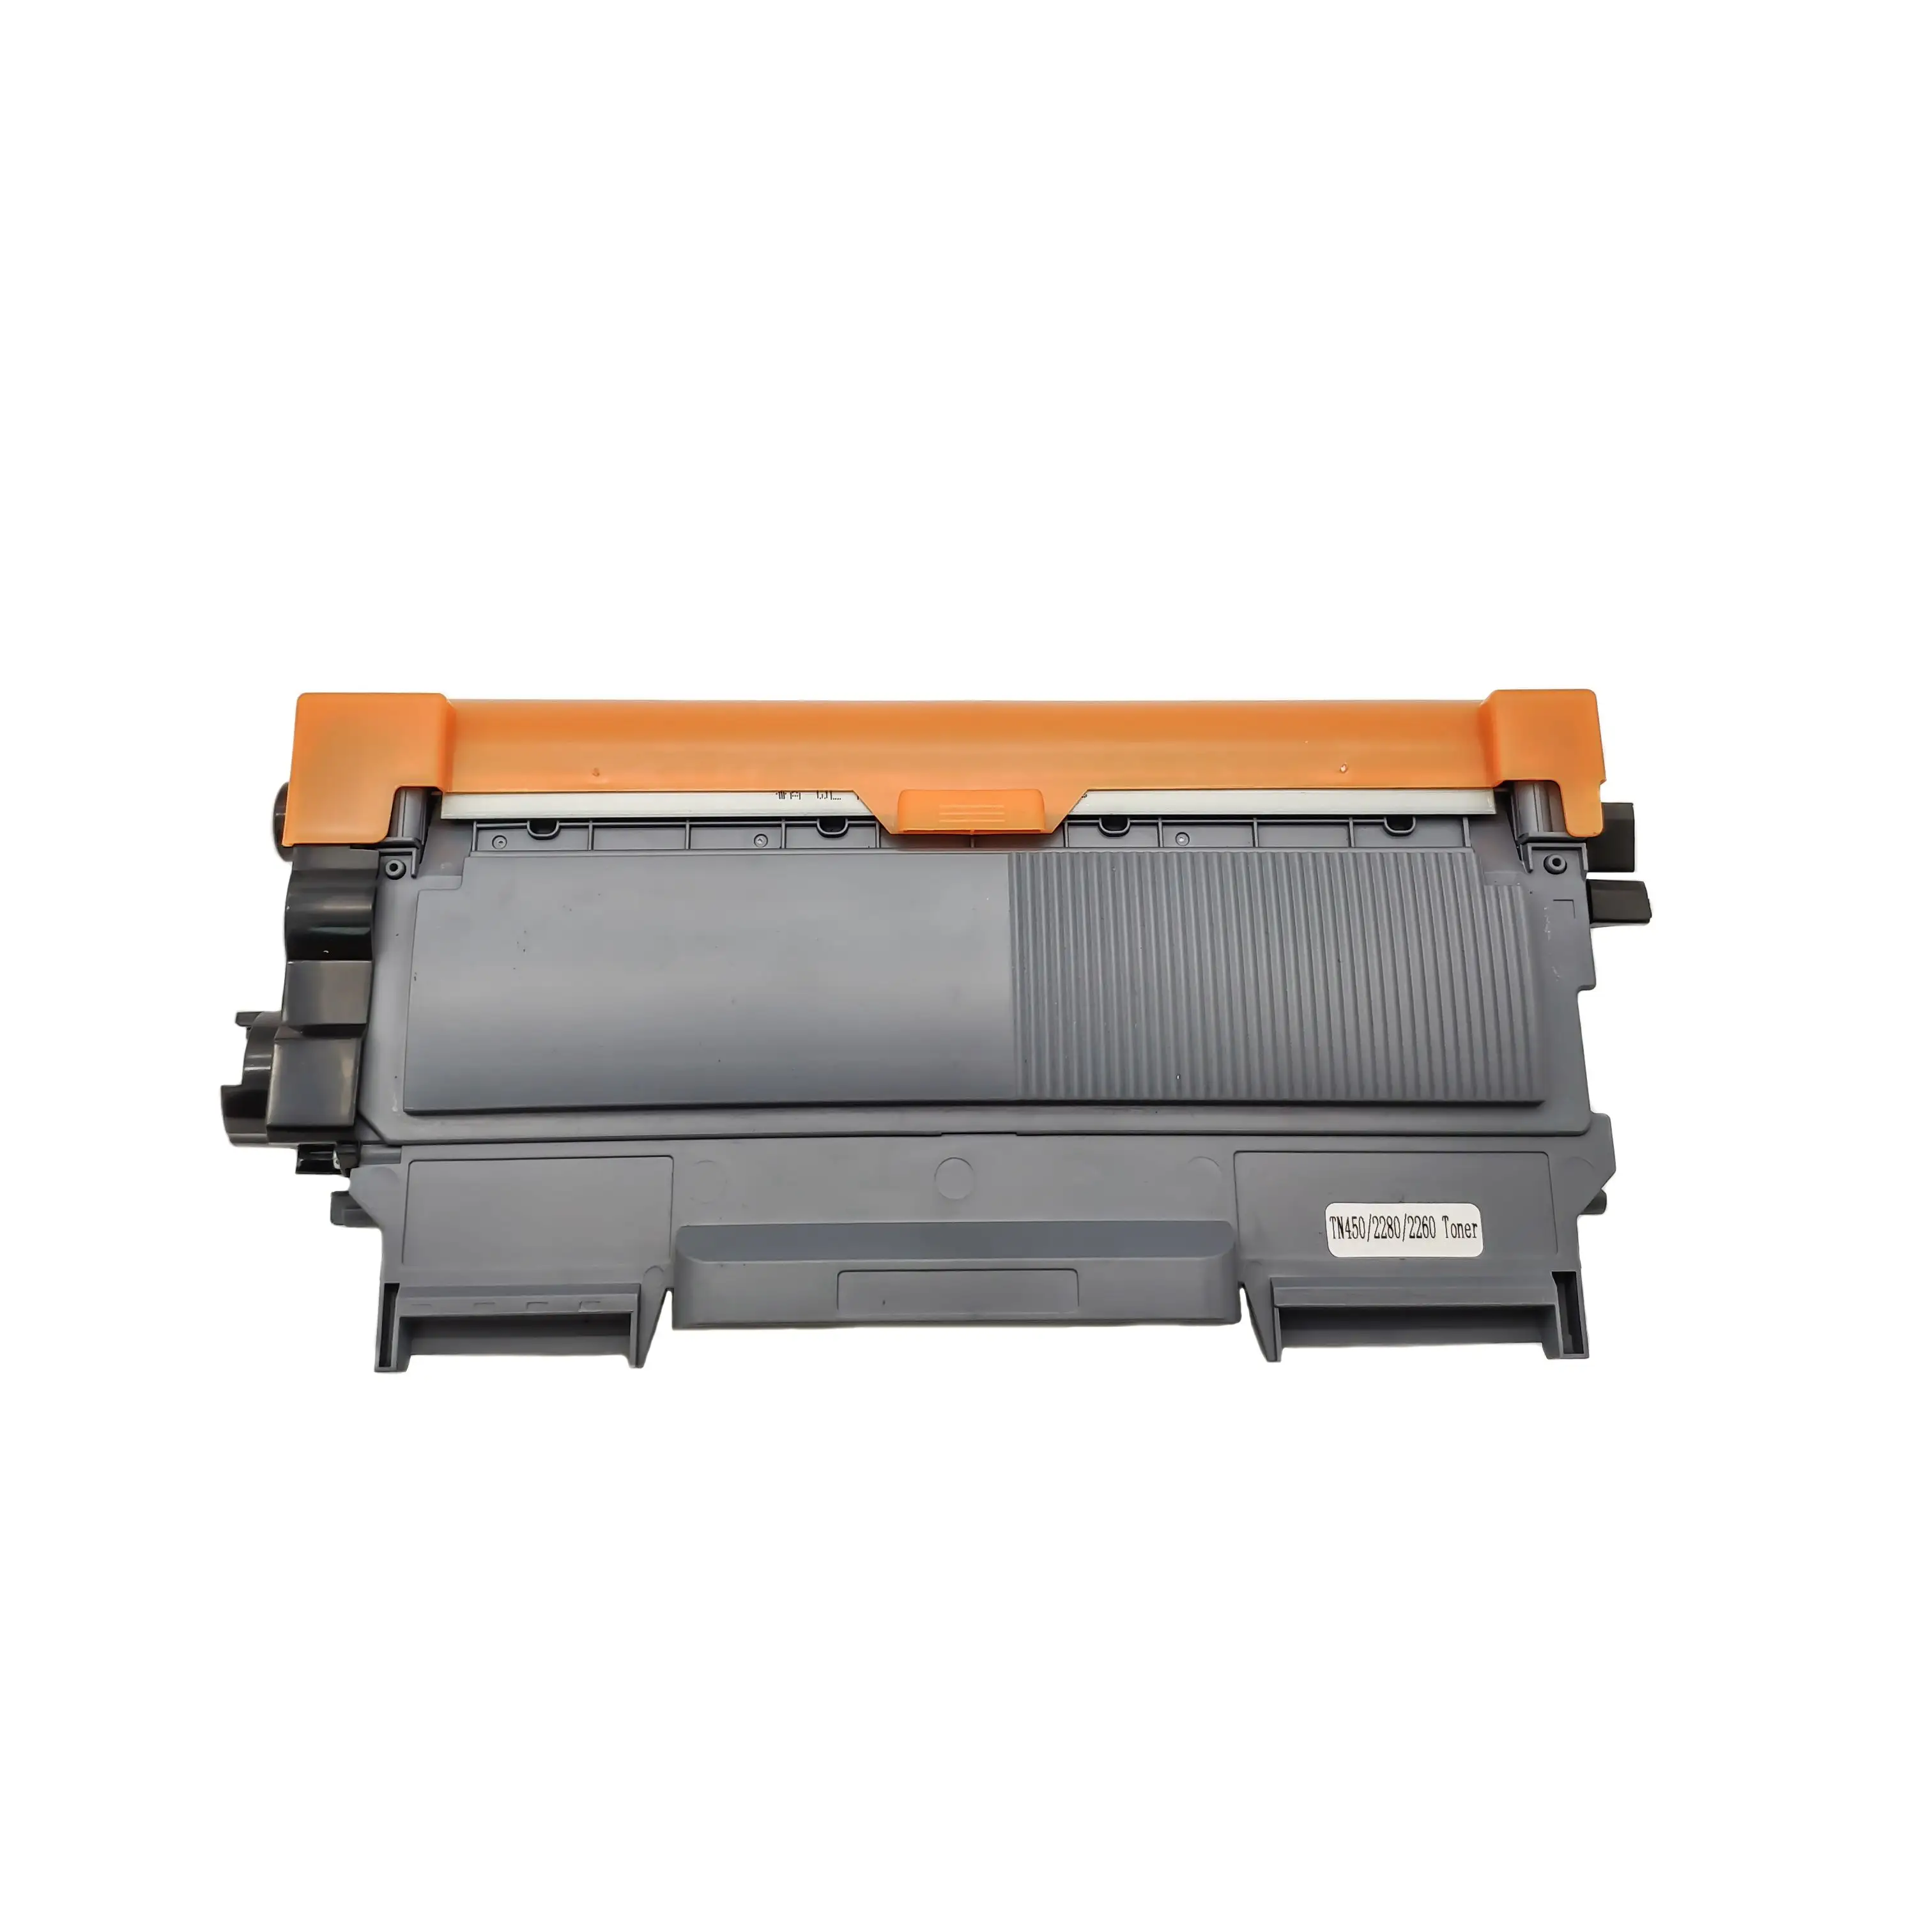 Cartucho de tóner para impresoras láser Tn450, precio de fábrica, 39x15x20Cm